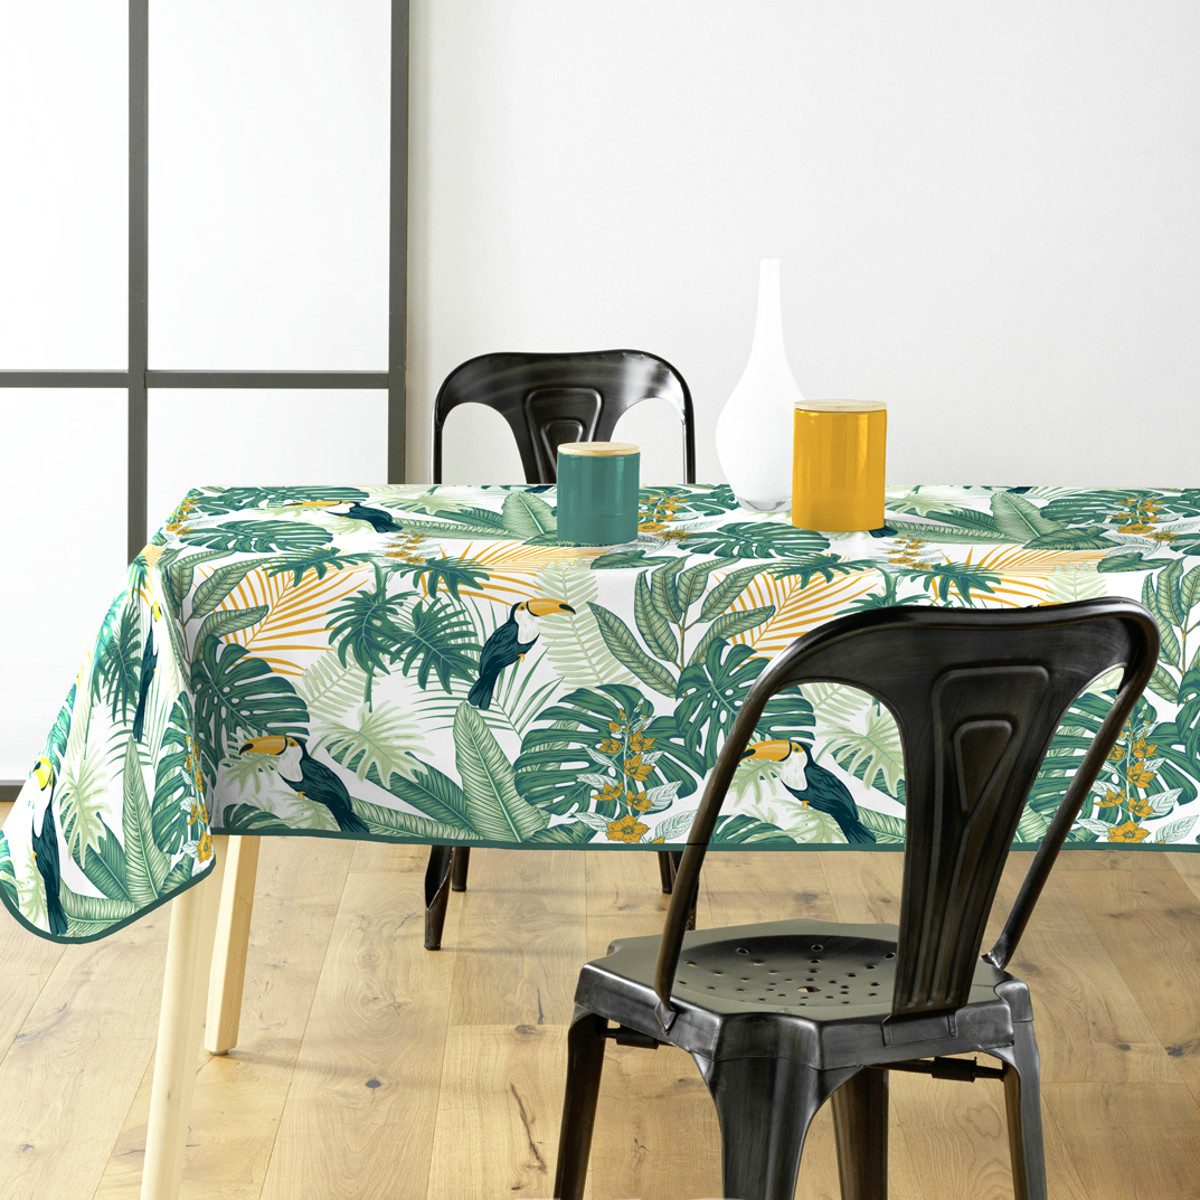 Sanixa Gartentischdecke Tischdecke PVC Grün Dschungel 140 x 200 cm Tischtuch Kunststoff (Tischschutz Dschungeldesign), Gartentischdecke Balkontischdecke Tischtuch